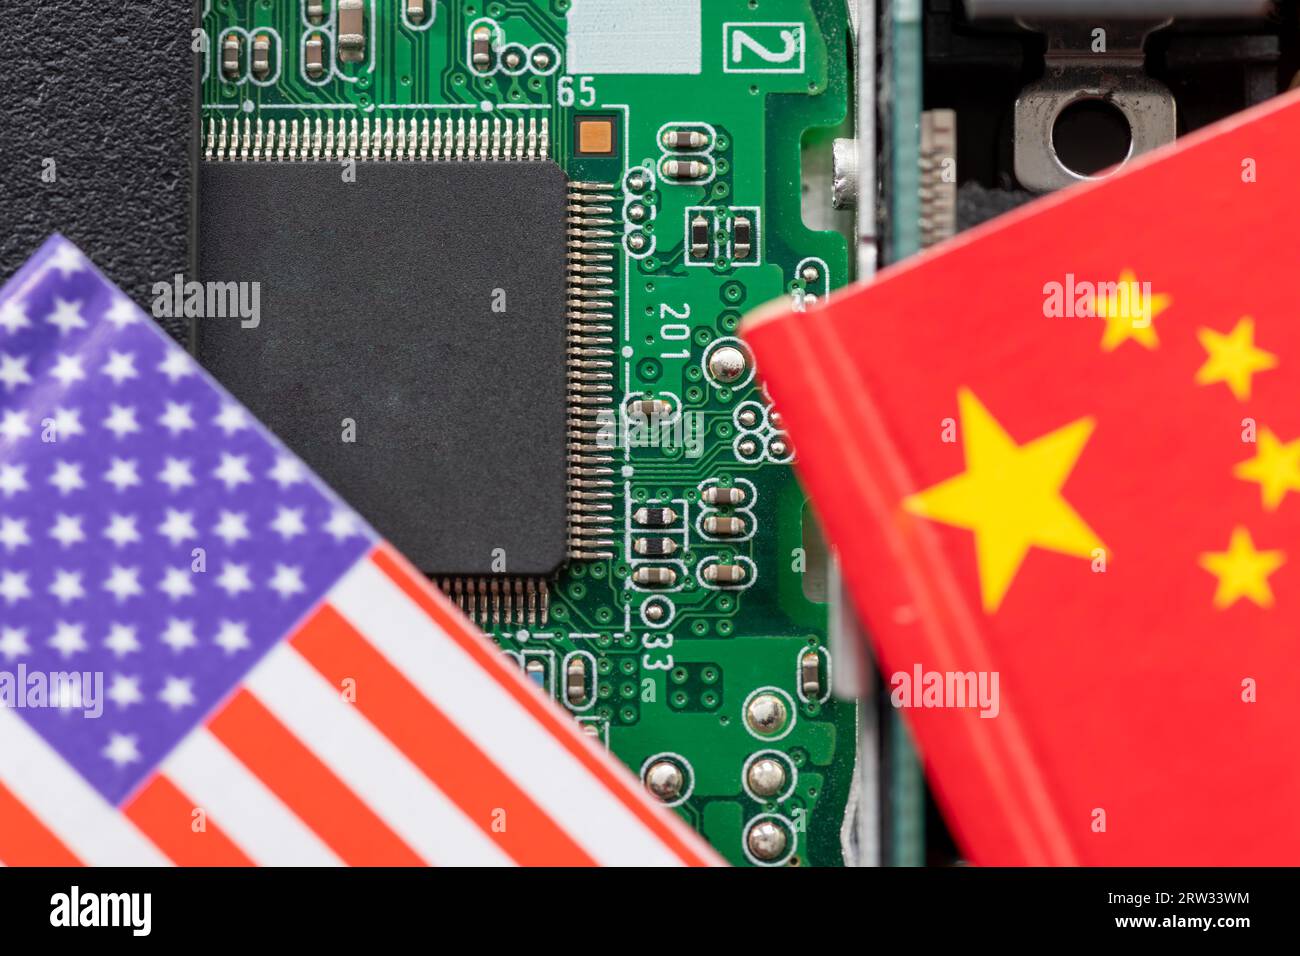 Un conflicto de tecnología, concepto de competencia con las banderas estadounidenses y chinas en la parte superior de una placa de circuito de semiconductores. Foto de stock